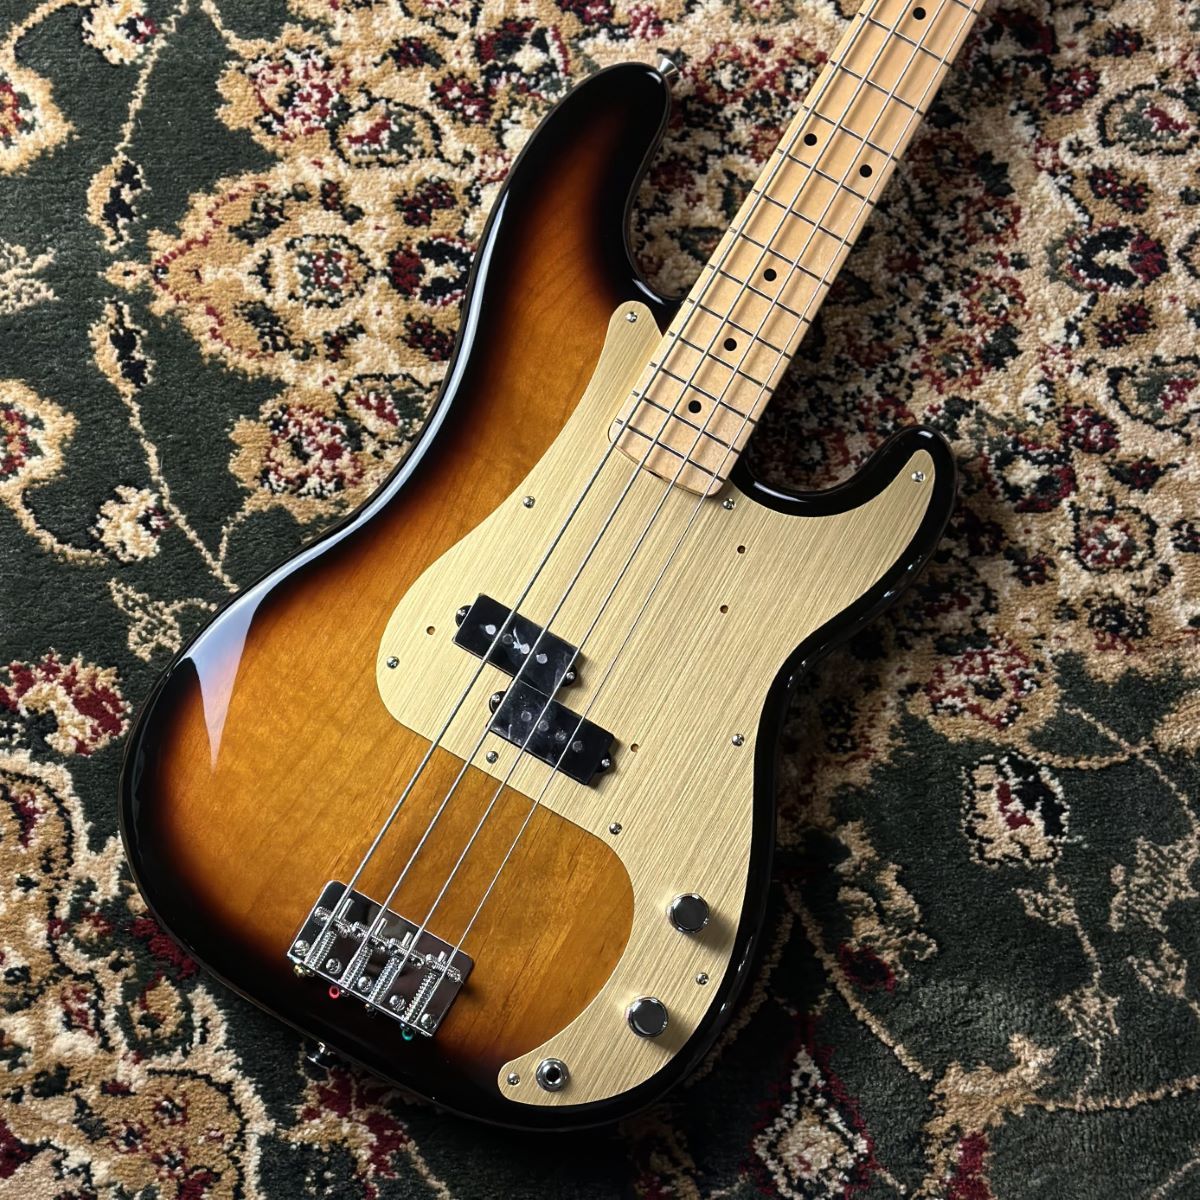 CONTENTSFender Made in Japan Heritage 50s Precision Bass Maple Fingerboard 2-Color Sunburstこの商品について技術者による安心のアフターフォローギターアドバイザーが楽器選びをサポート最新情報を手に入れよう音楽をも […]